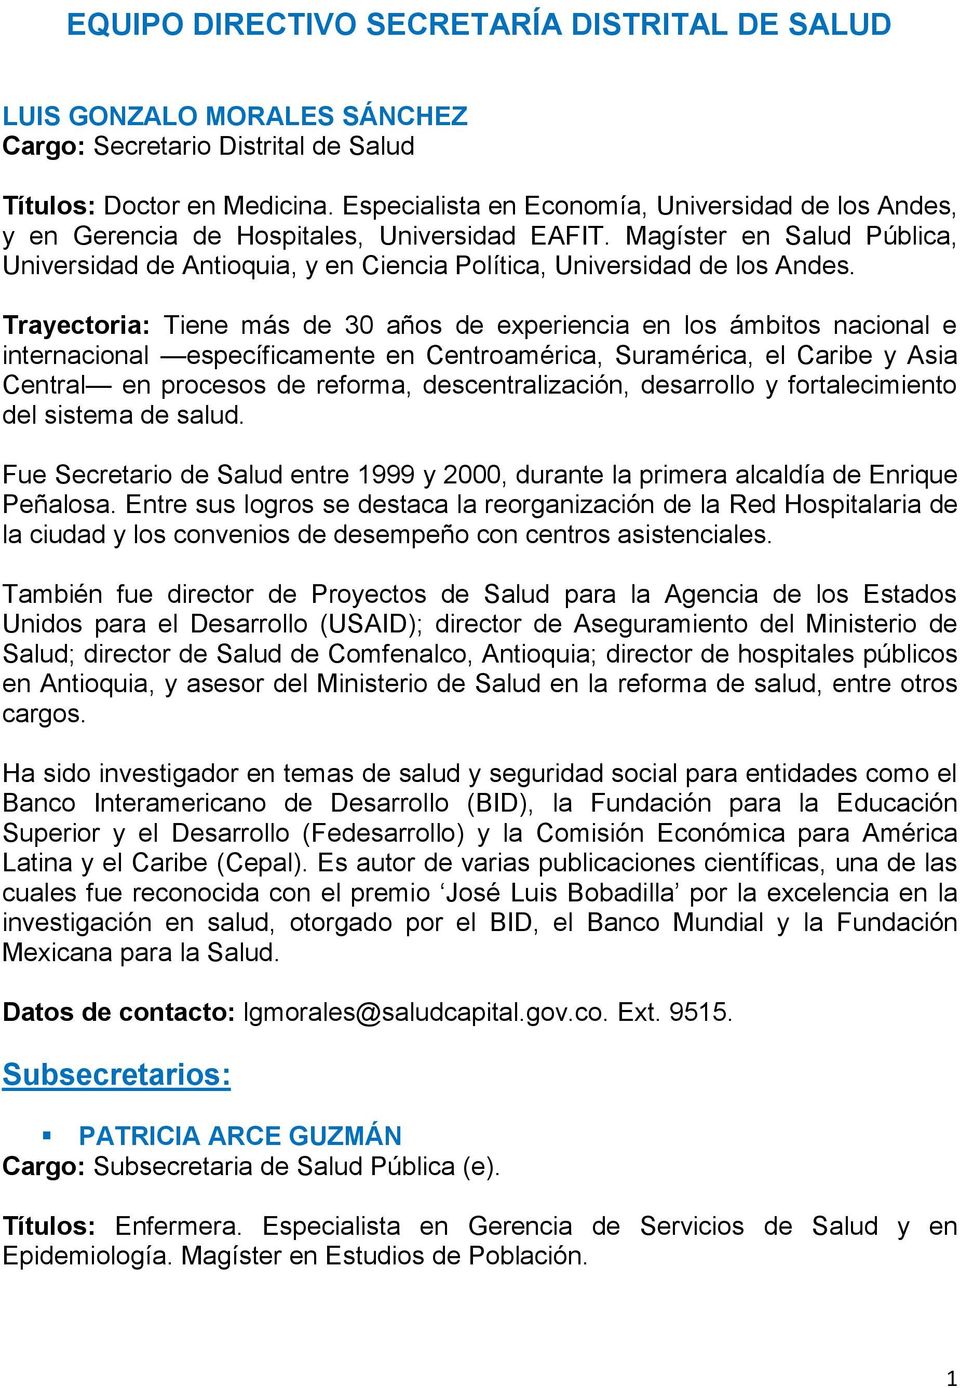 Magíster en Salud Pública, Universidad de Antioquia, y en Ciencia Política, Universidad de los Andes.